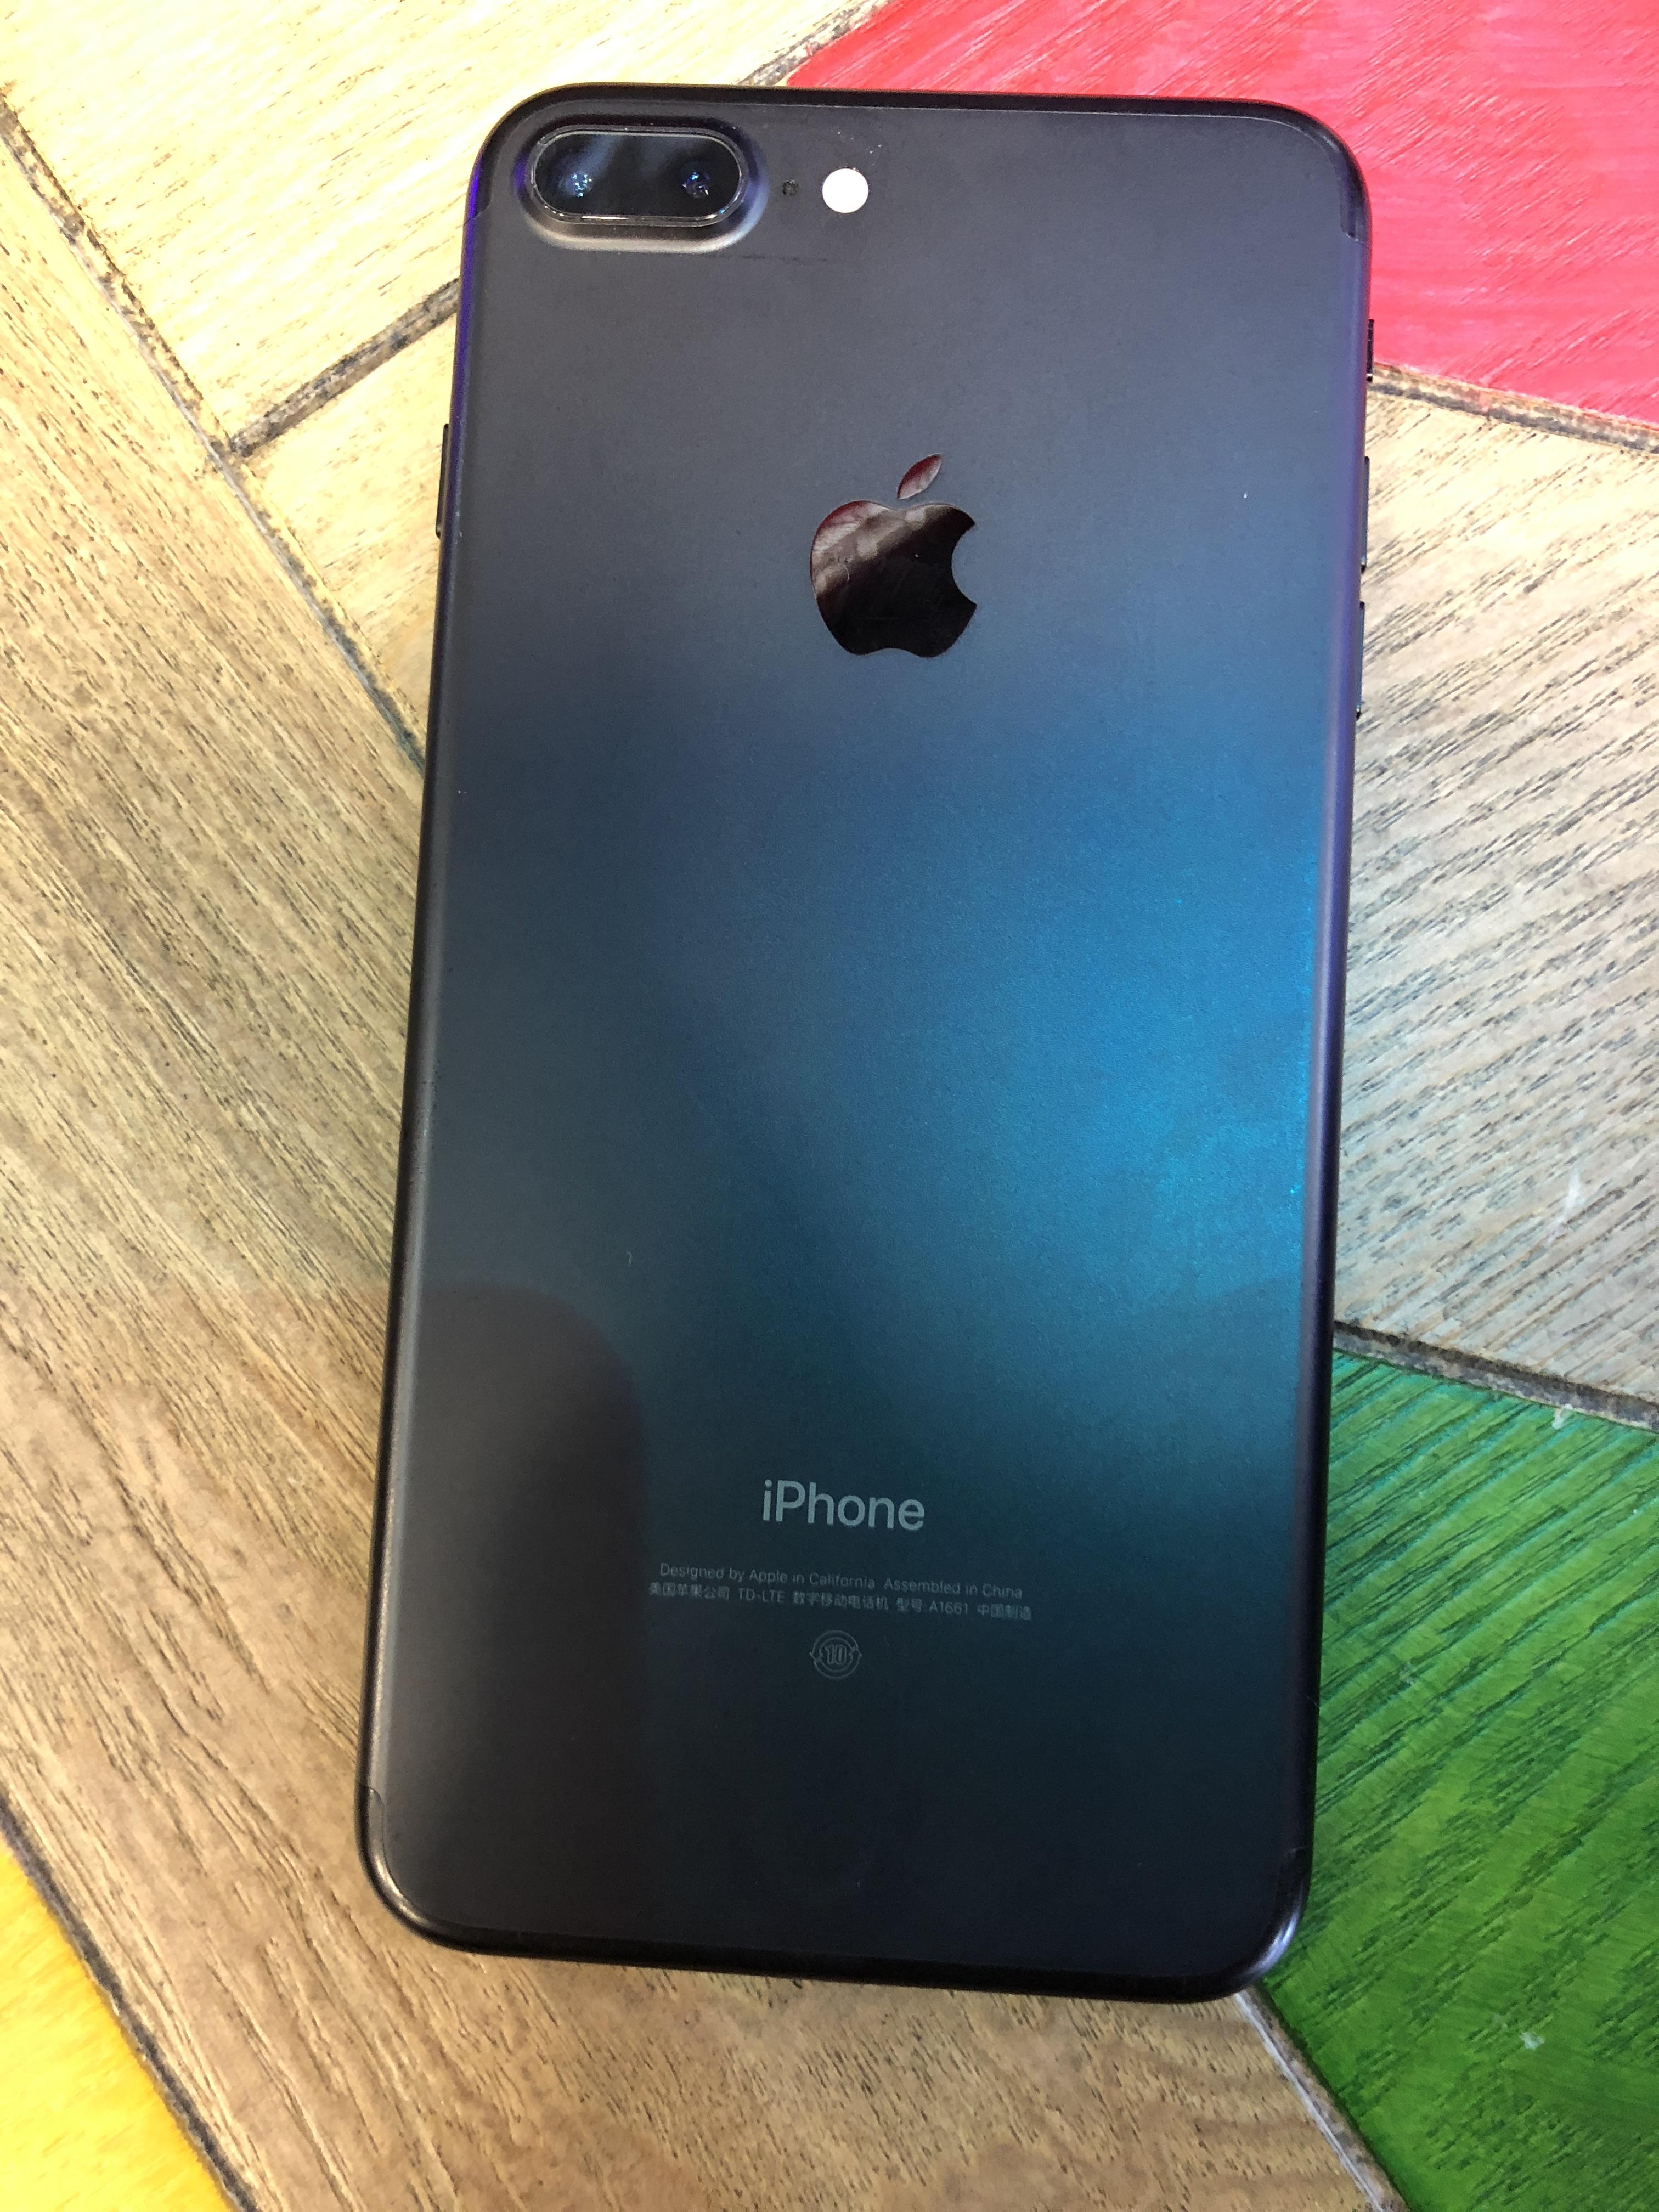 苹果(Apple) iPhone 11 Pro 256GB 深空灰色 移动联通电信4G全网通手机 双卡双待 iphone11pro评价【怎么样 ...